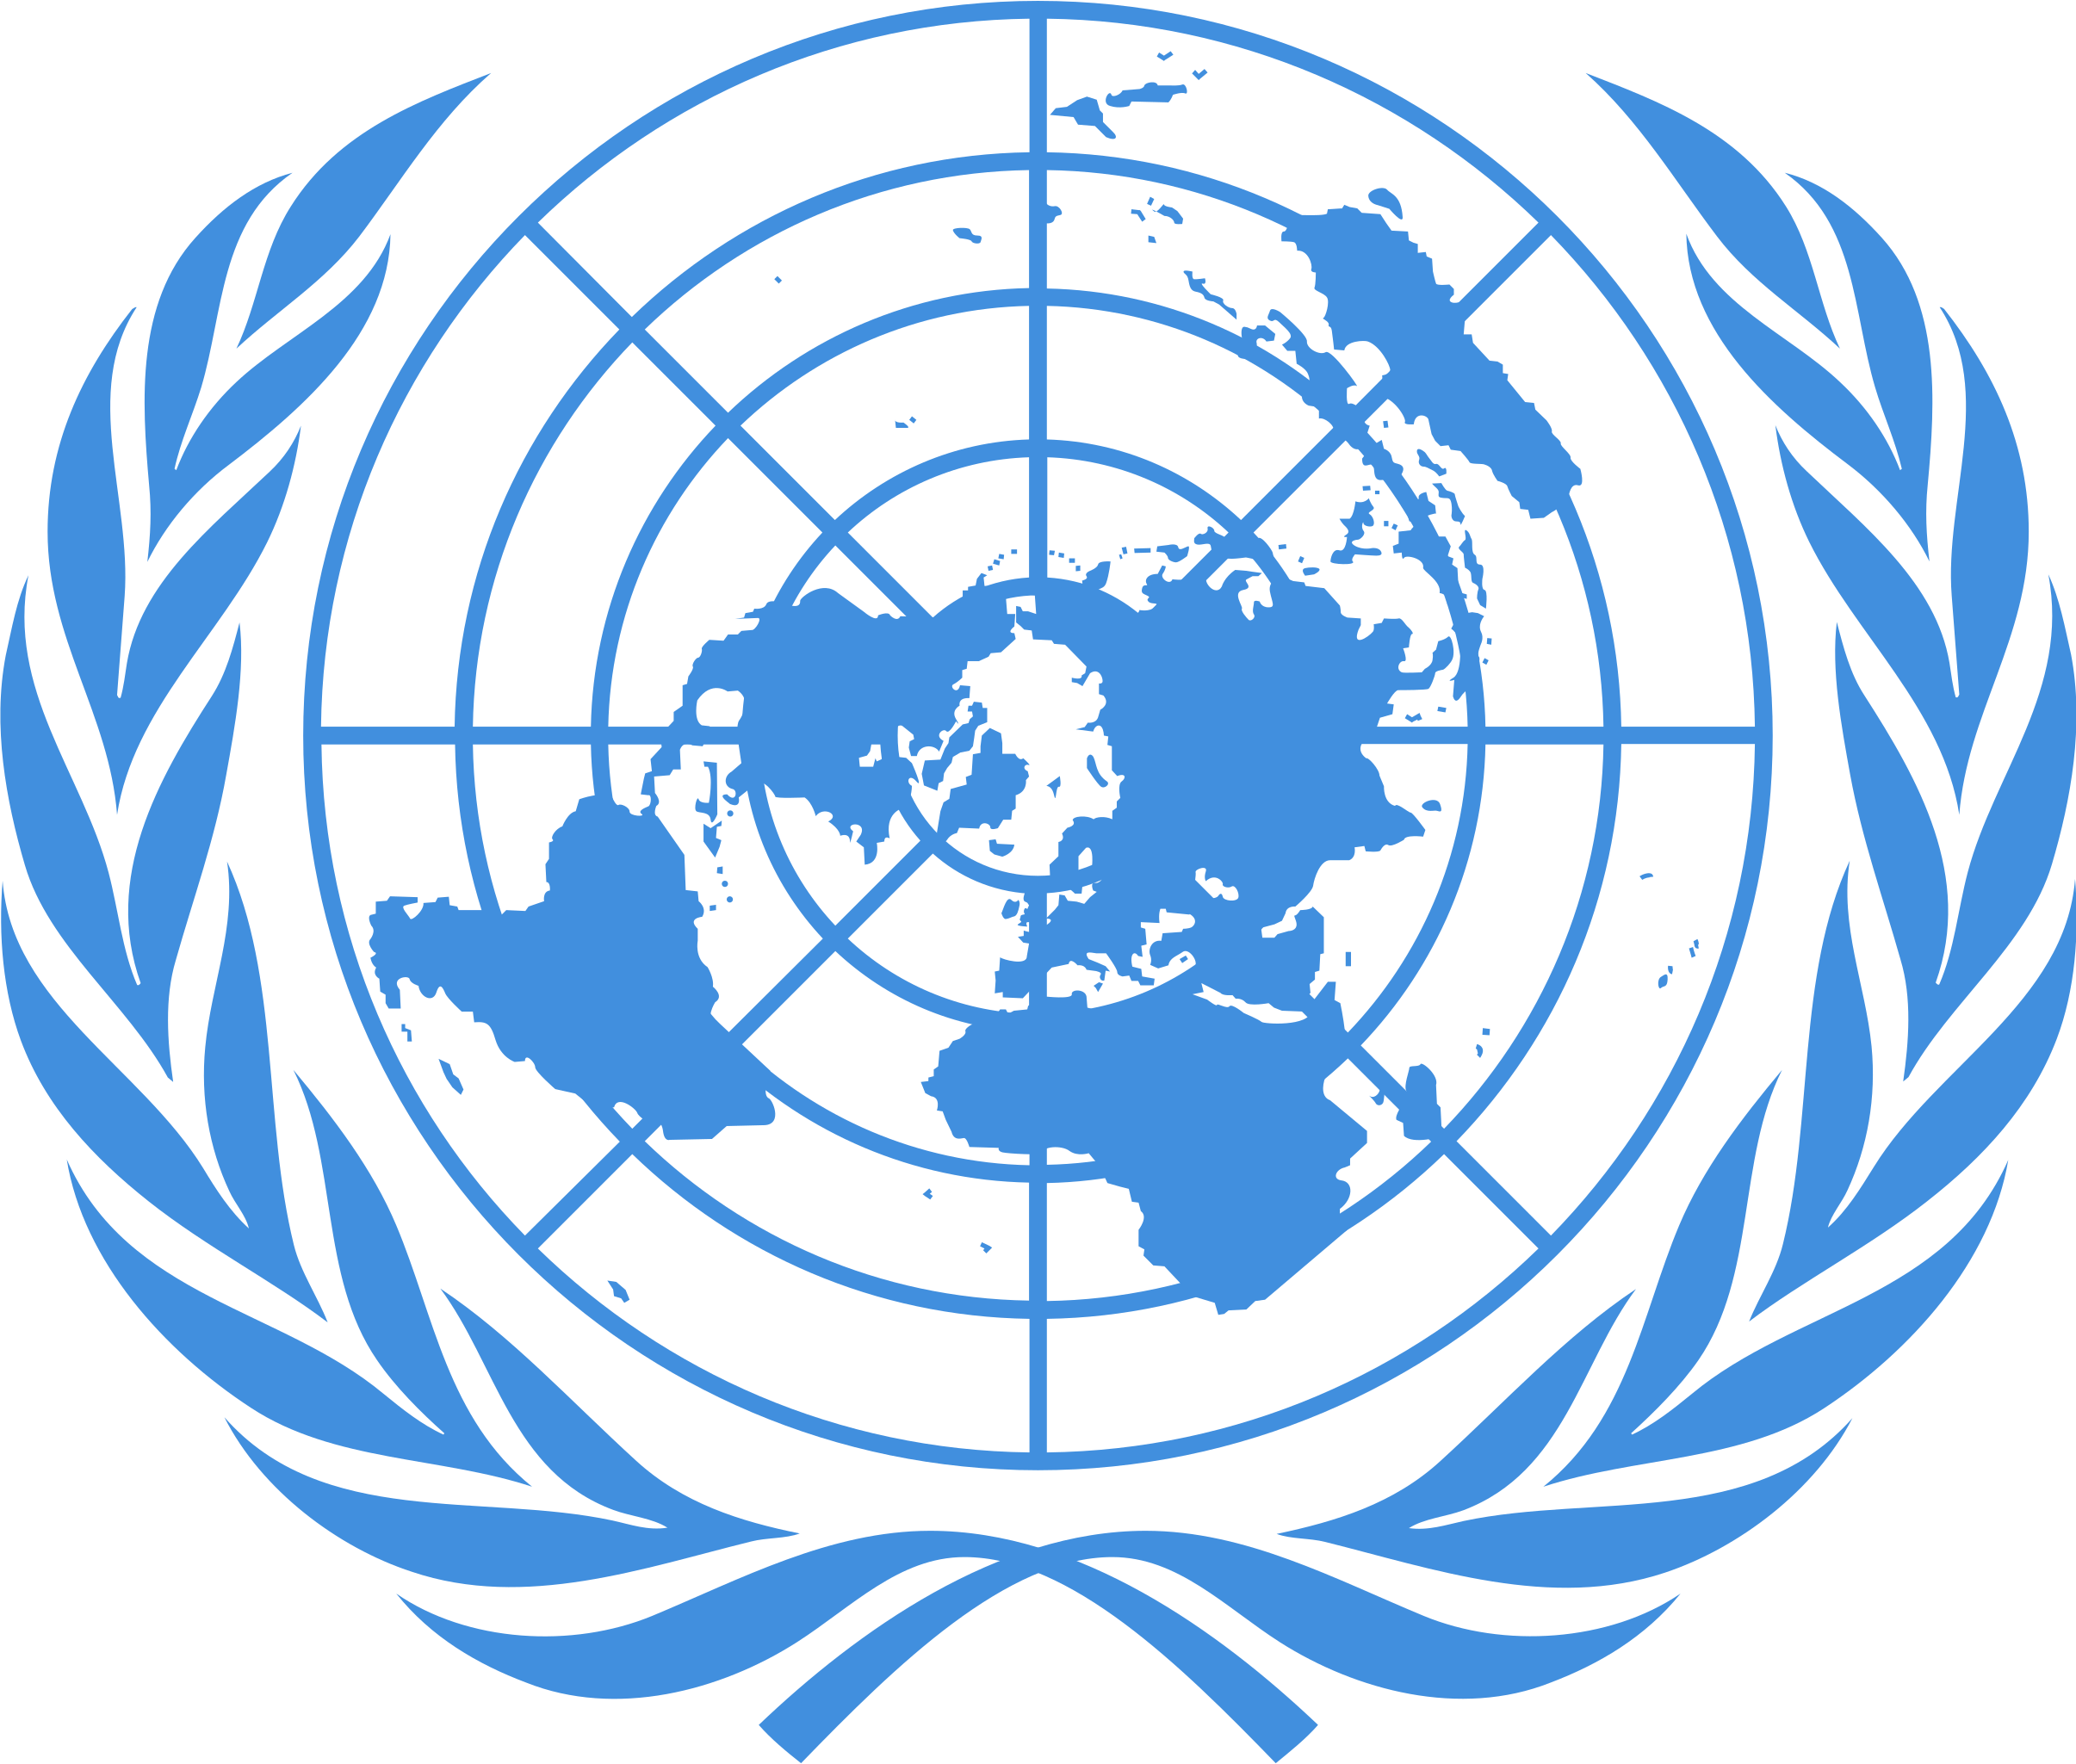 United Nations Logo - KibrisPDR